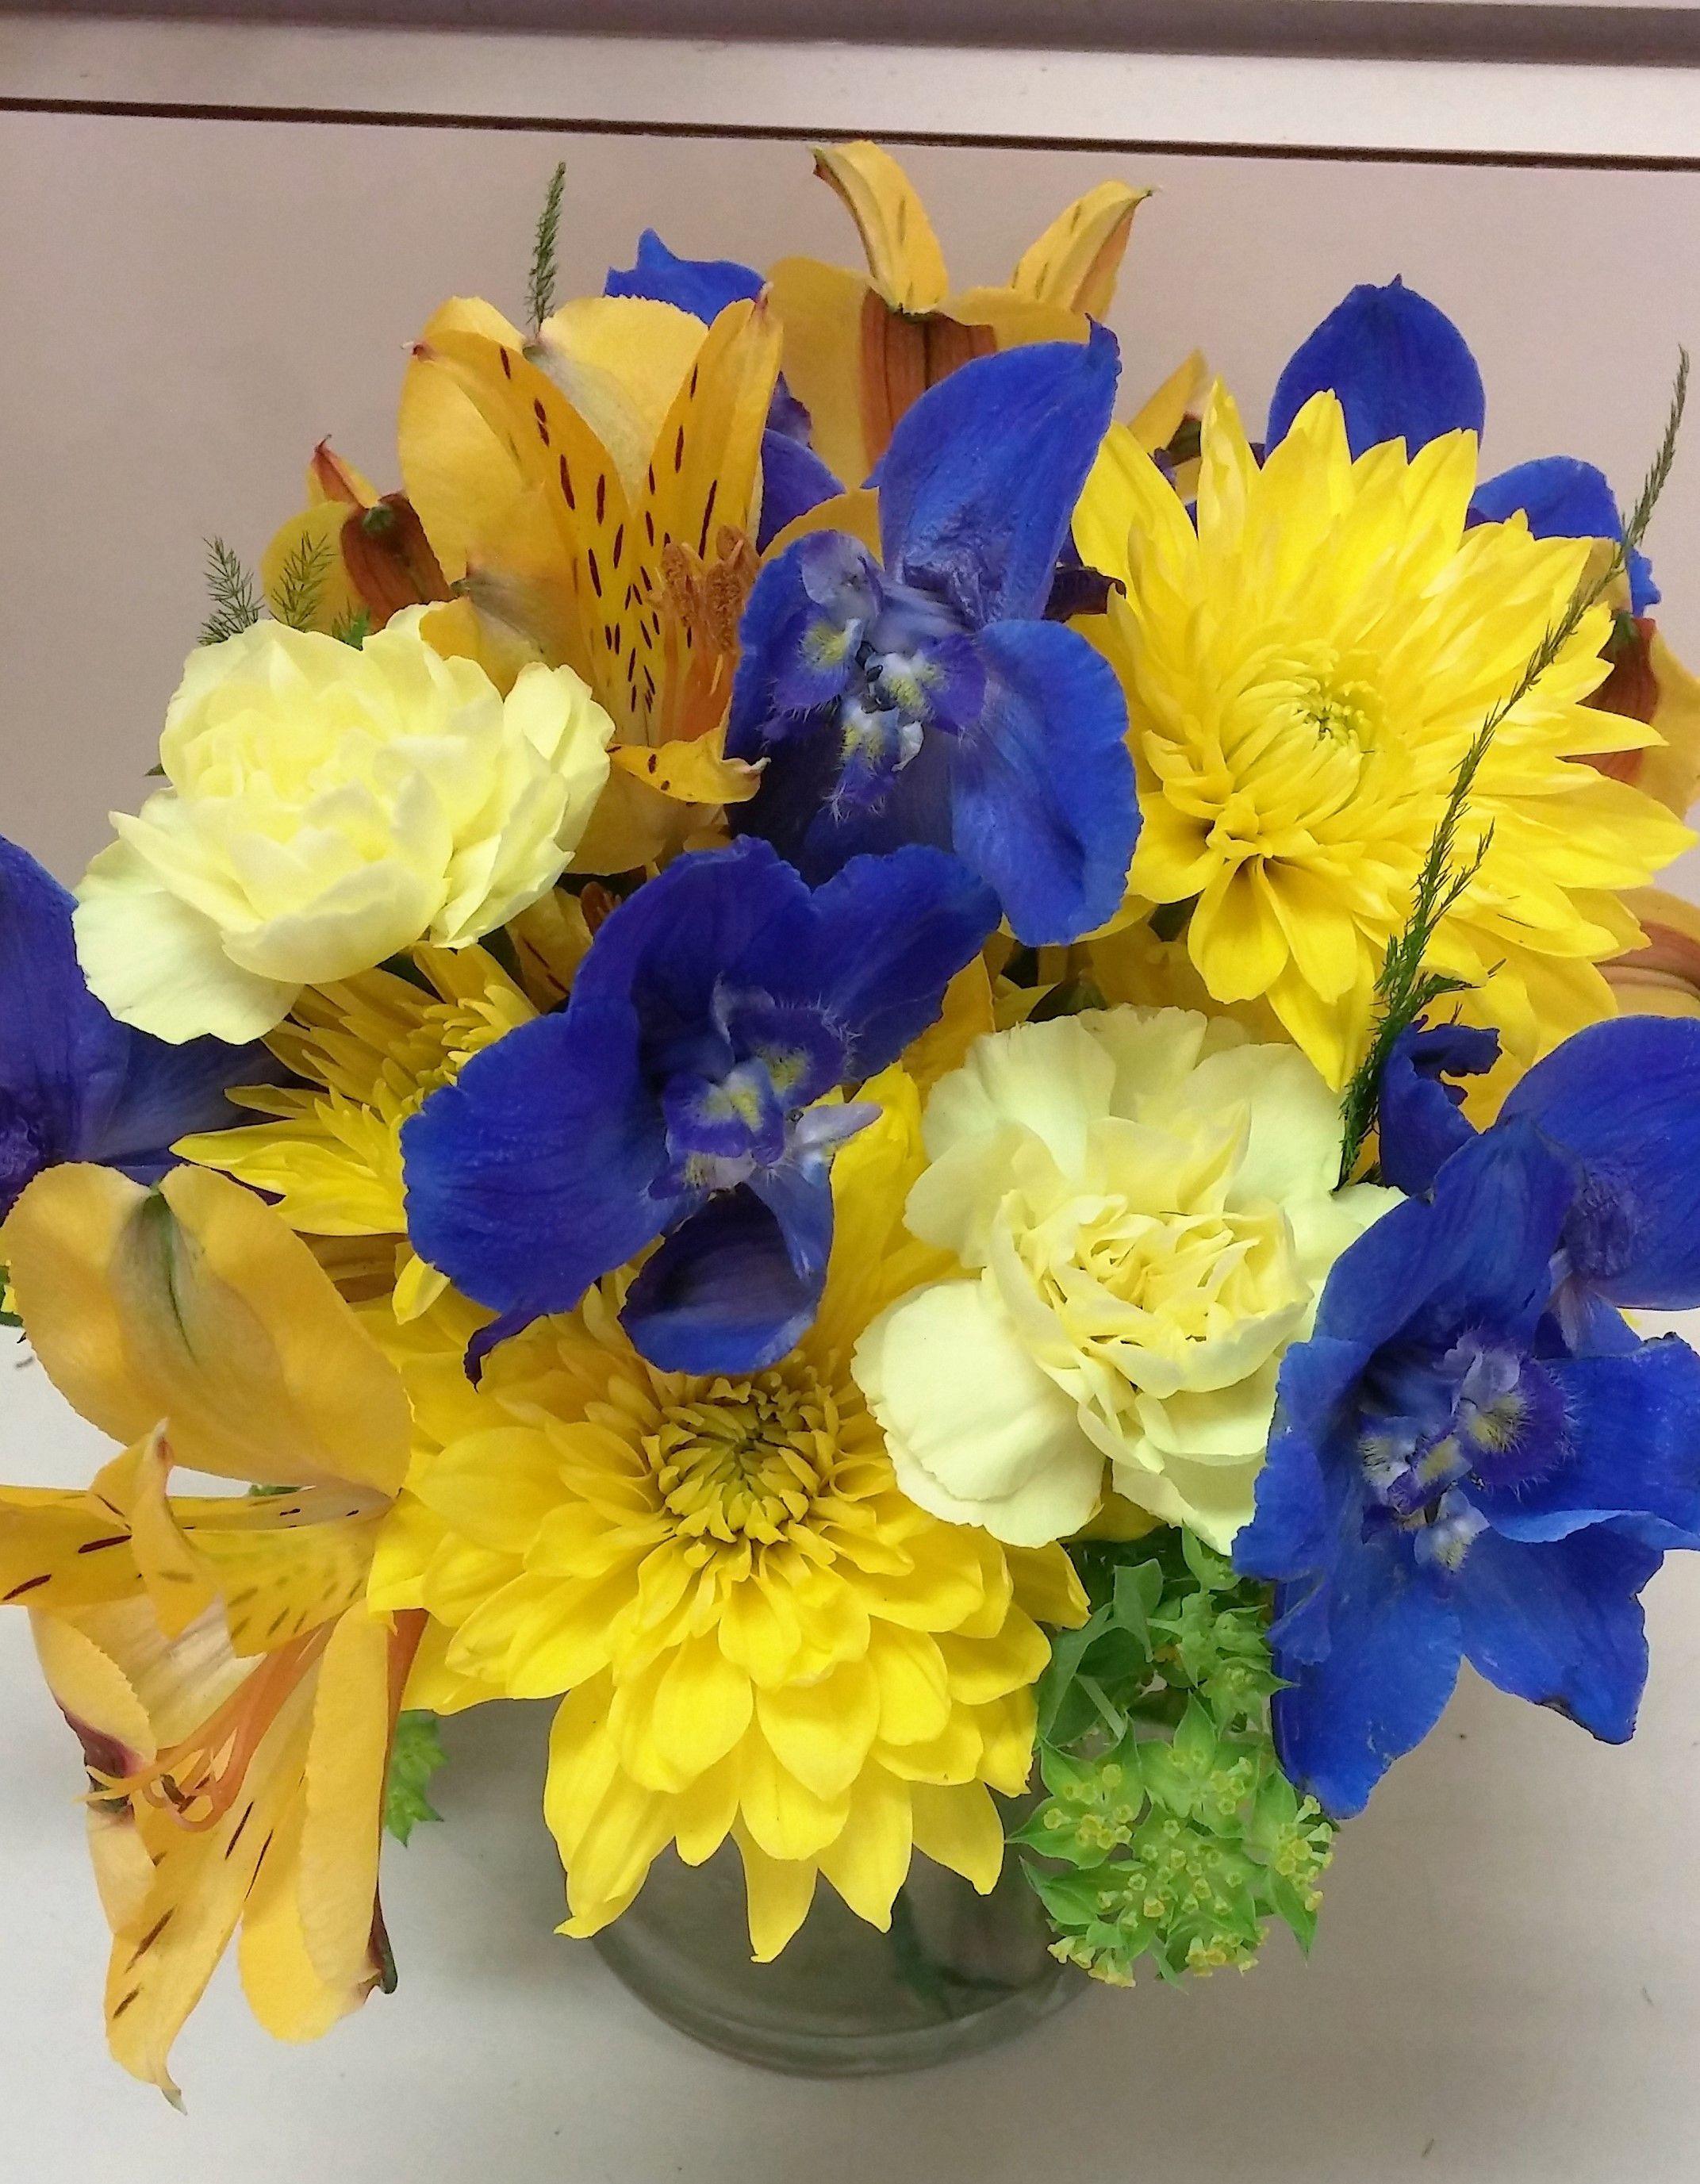 Floral Blue U Logo - u of m flower arrangement. maize and blue flowers. blue delphinium ...